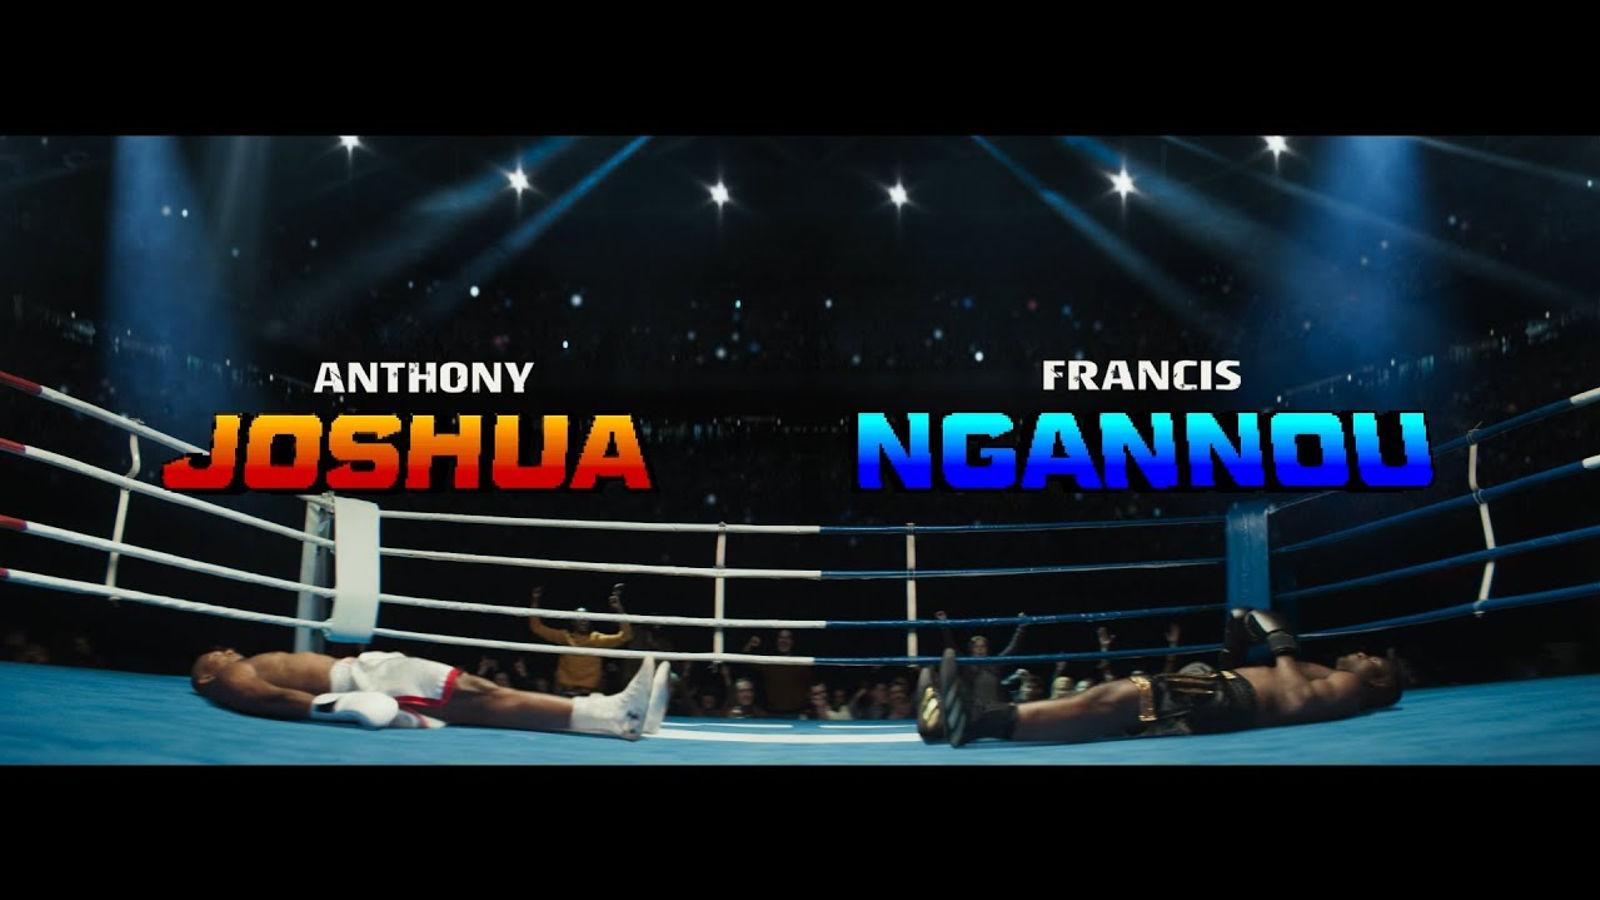 Anthony Joshua will fight Francis Ngannou